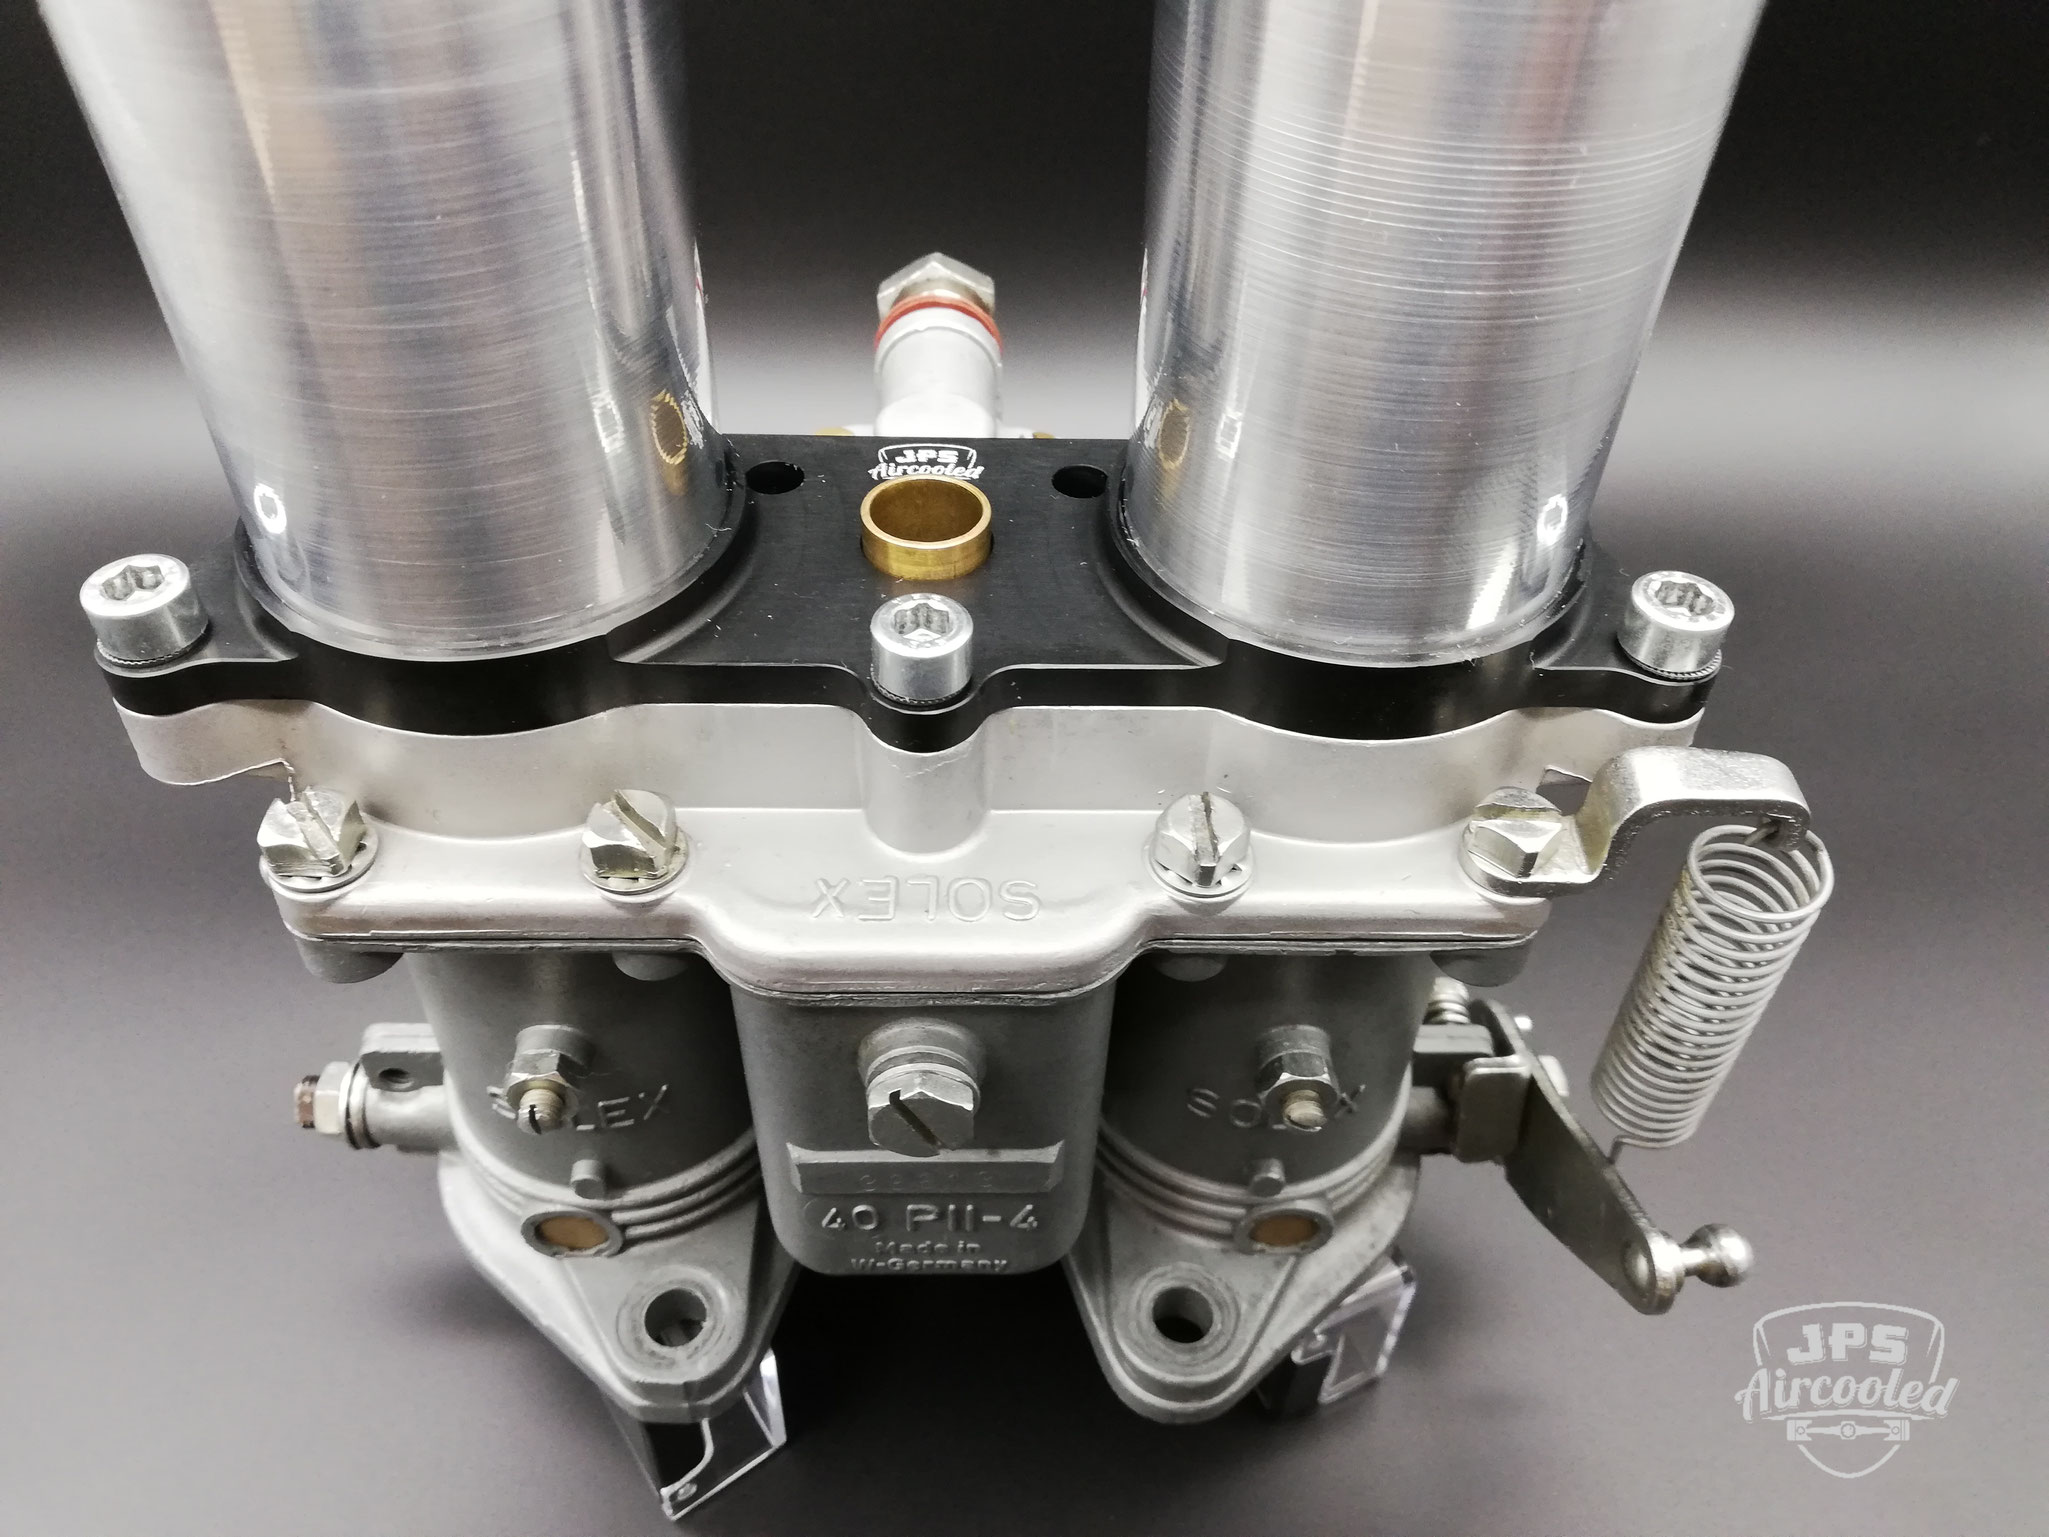 Solex Carburetor Parts - JPS Aircooled GmbH